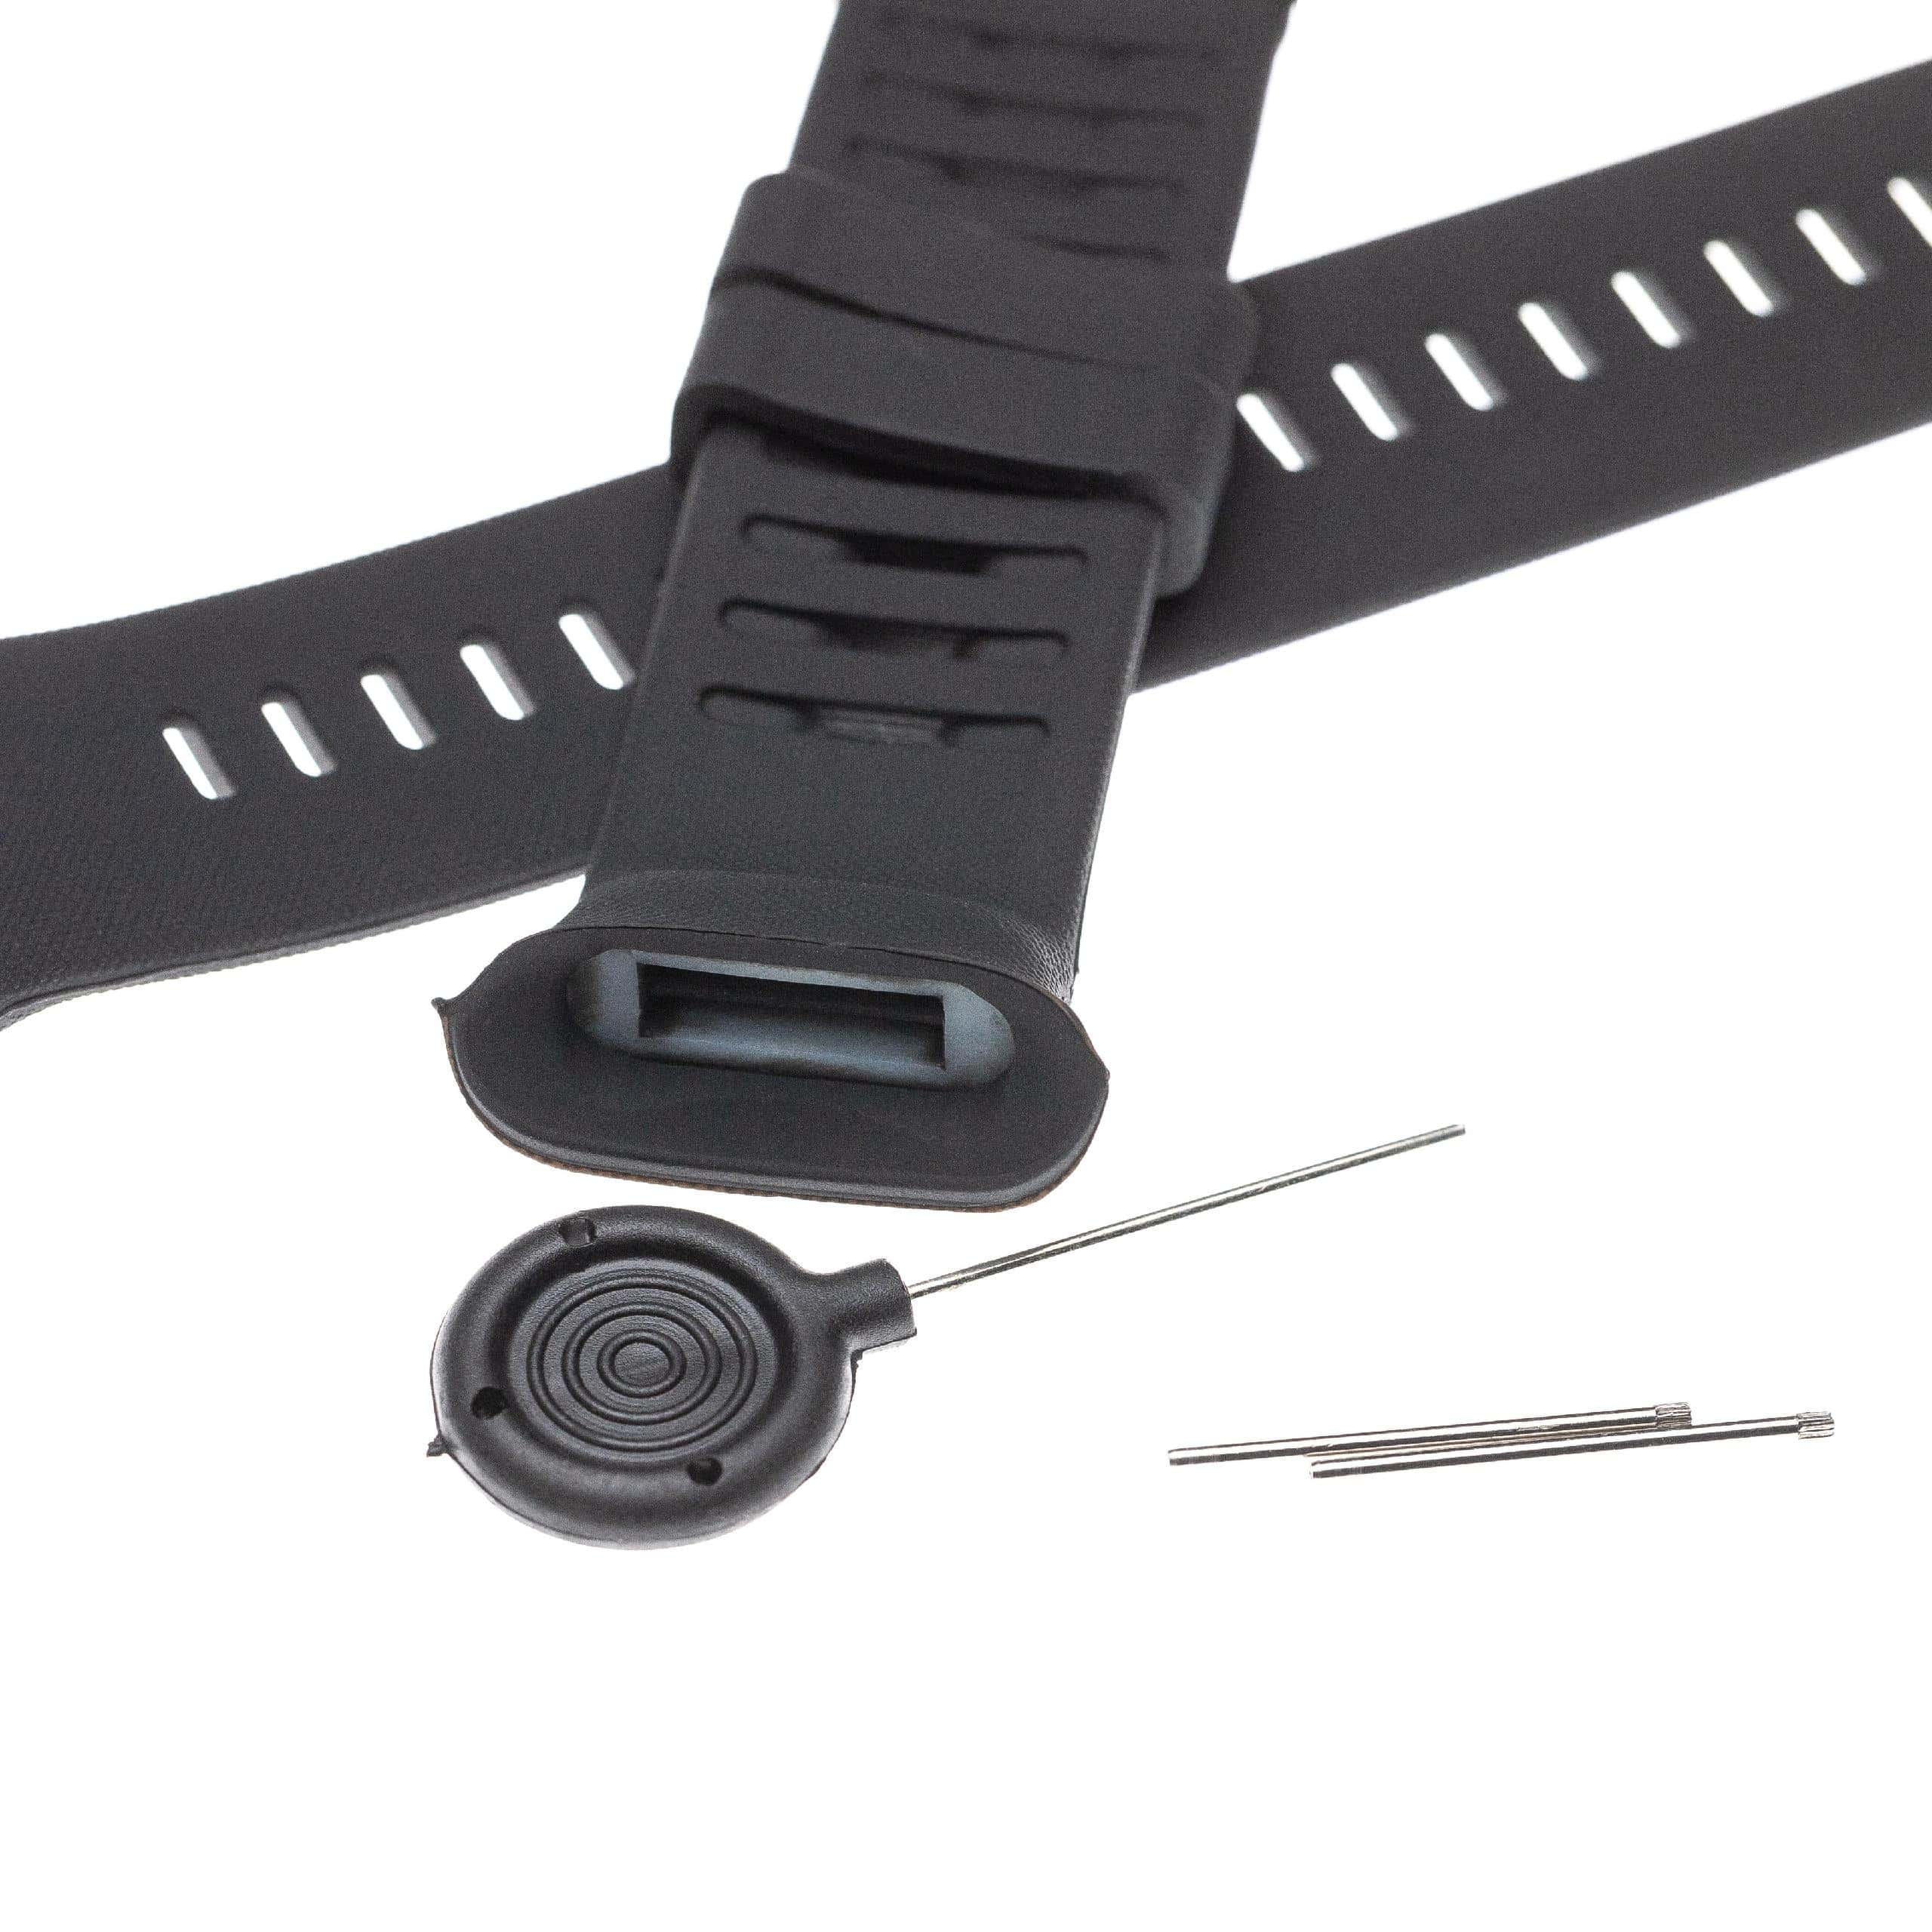 Bracelet pour montre intelligente Polar Vantage - 12,6 + 8,7 cm de long, noir